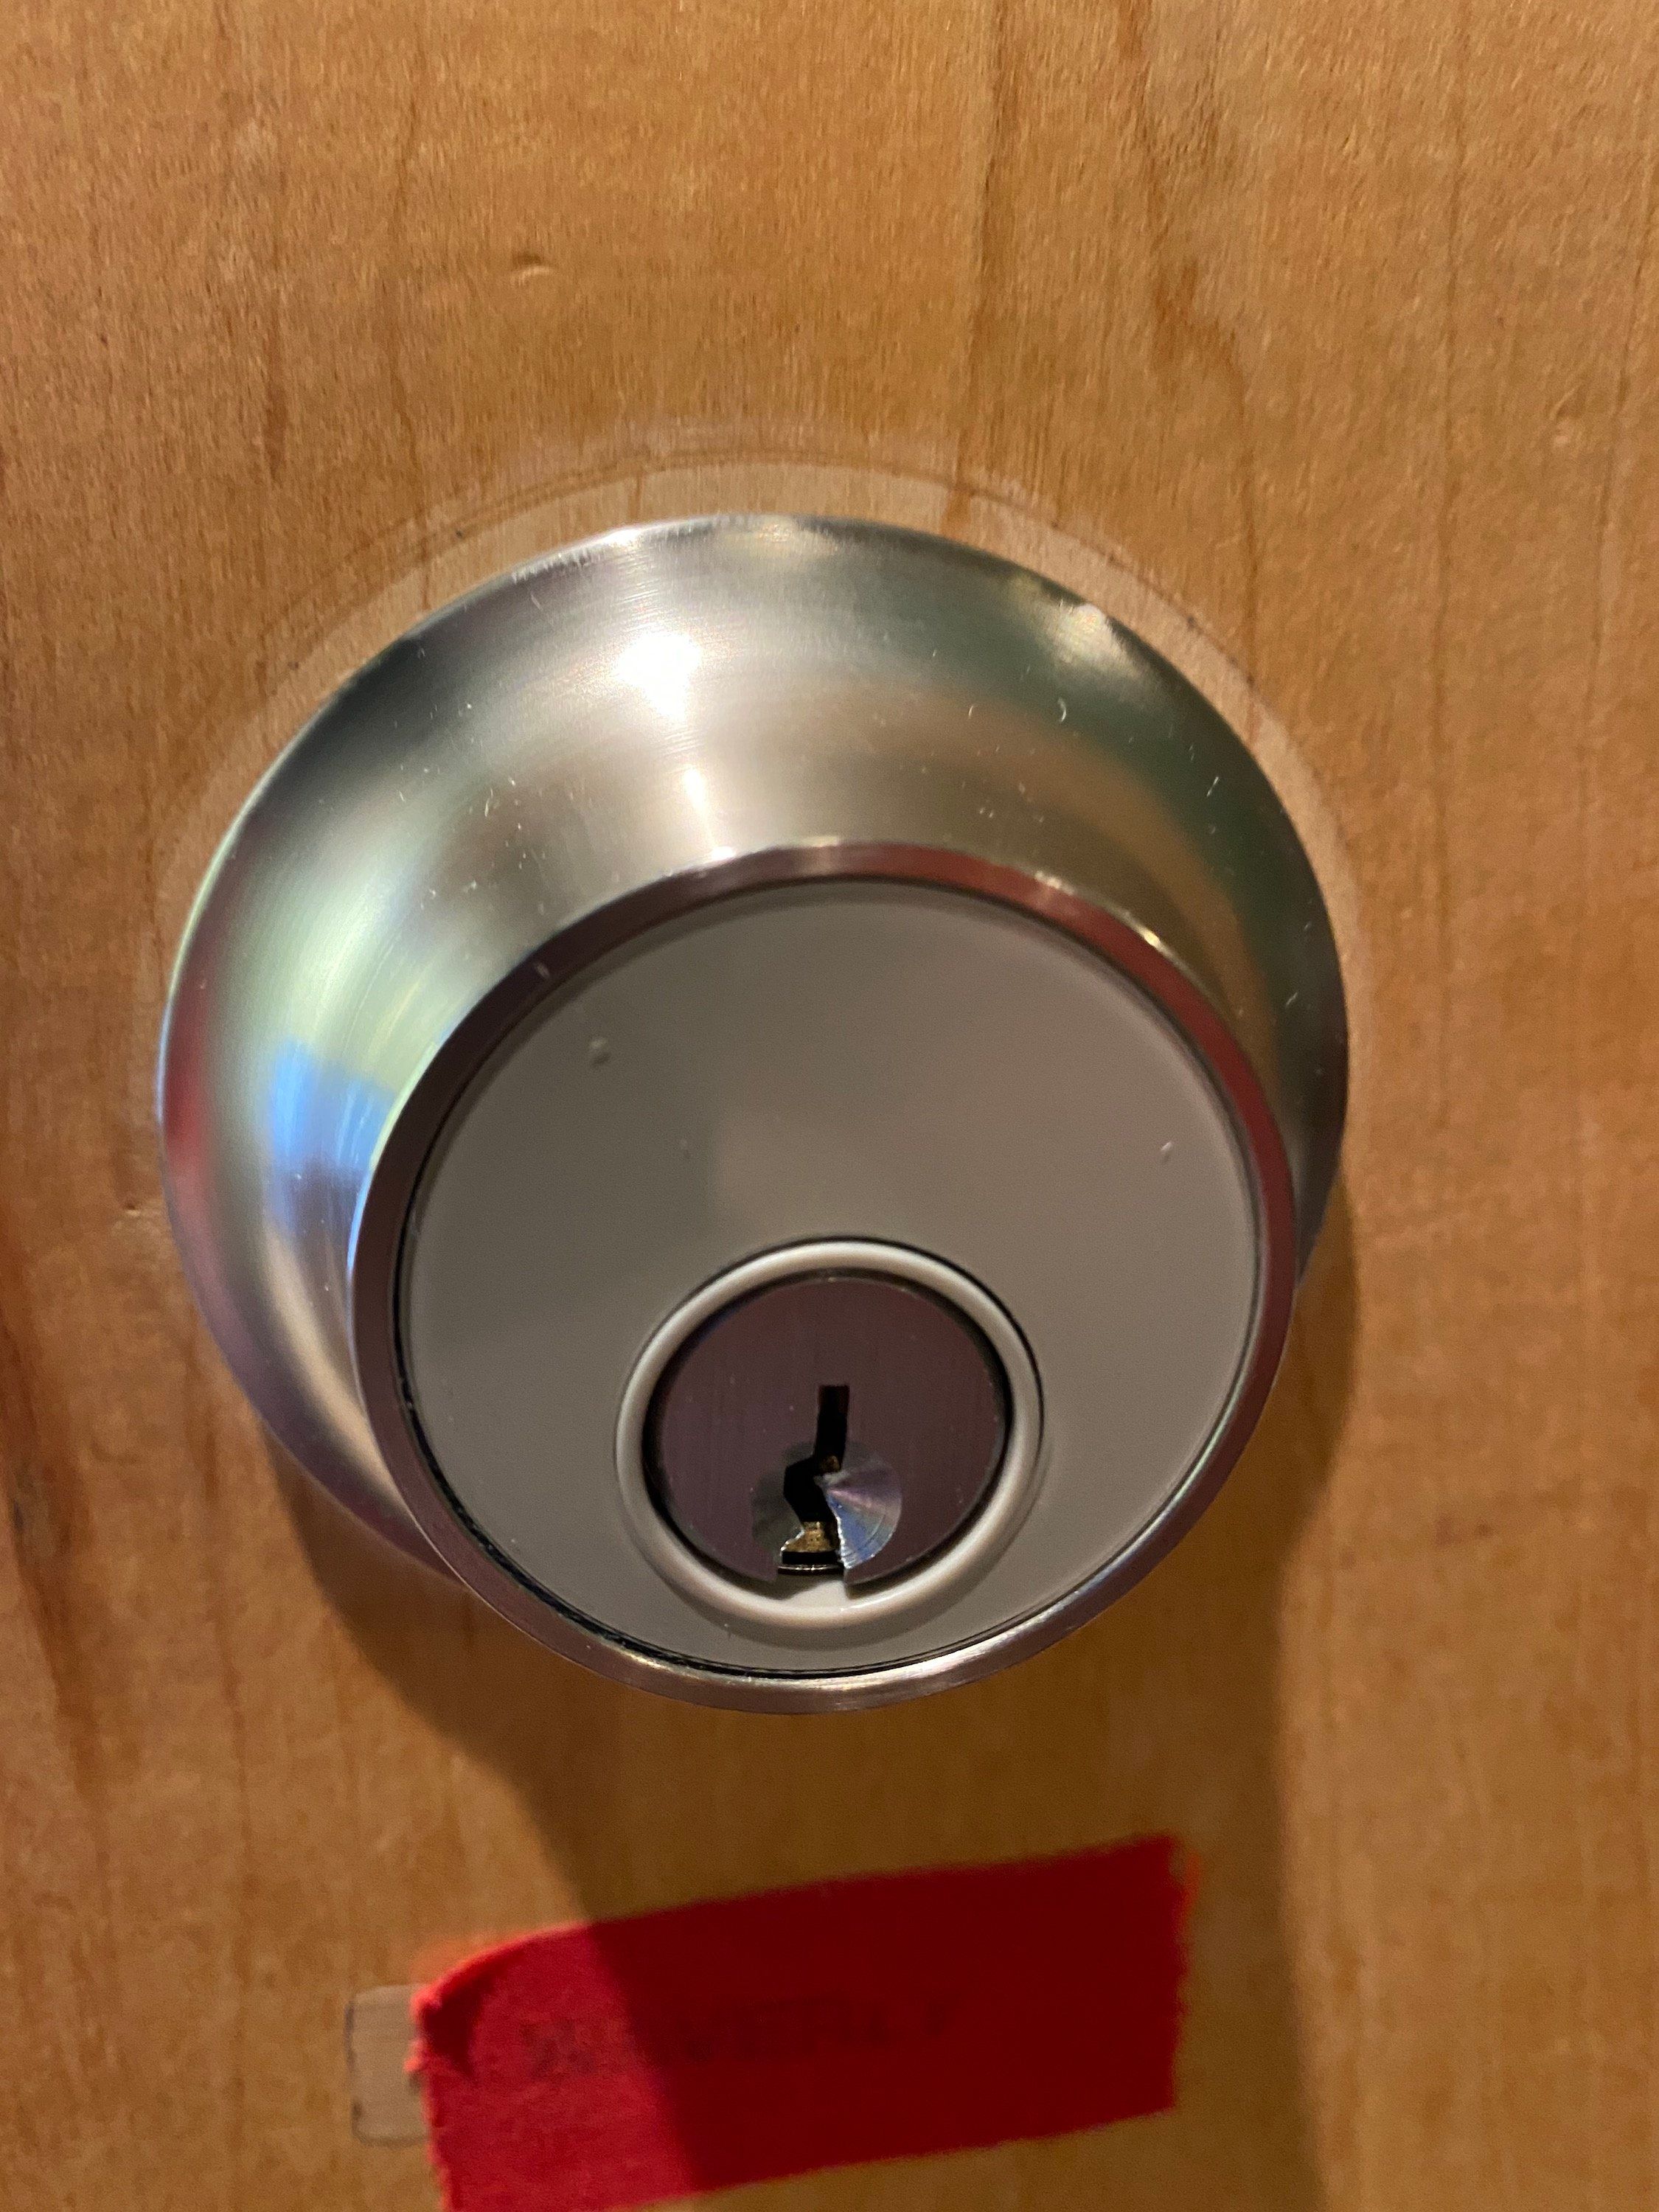 Level Lock Smart Lock on a door